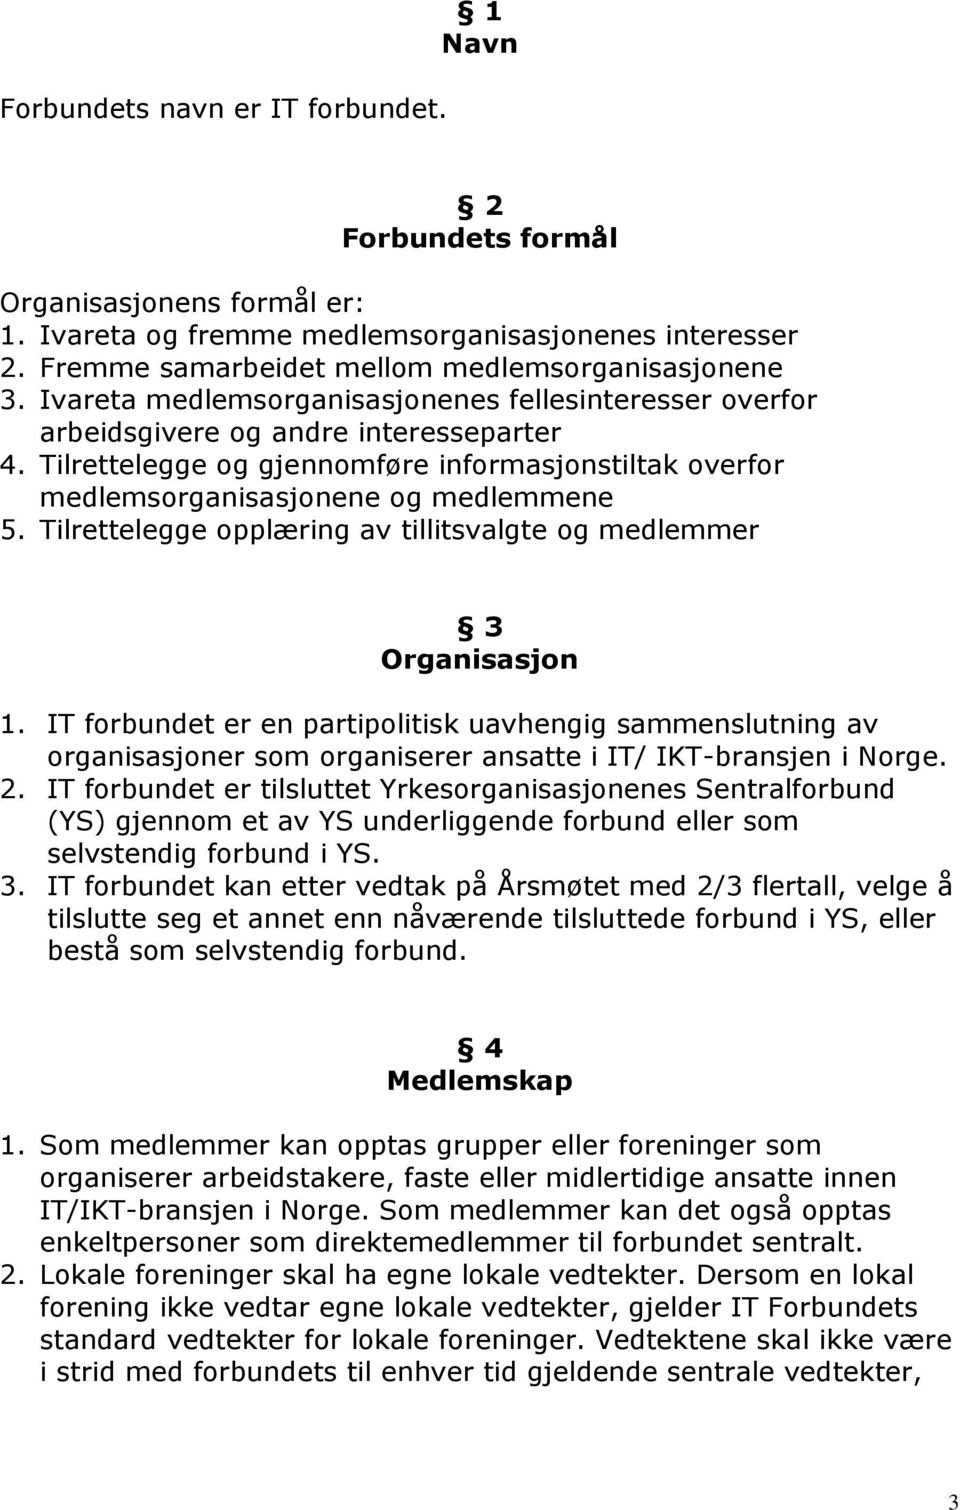 Tilrettelegge opplæring av tillitsvalgte og medlemmer 3 Organisasjon 1. IT forbundet er en partipolitisk uavhengig sammenslutning av organisasjoner som organiserer ansatte i IT/ IKT-bransjen i Norge.